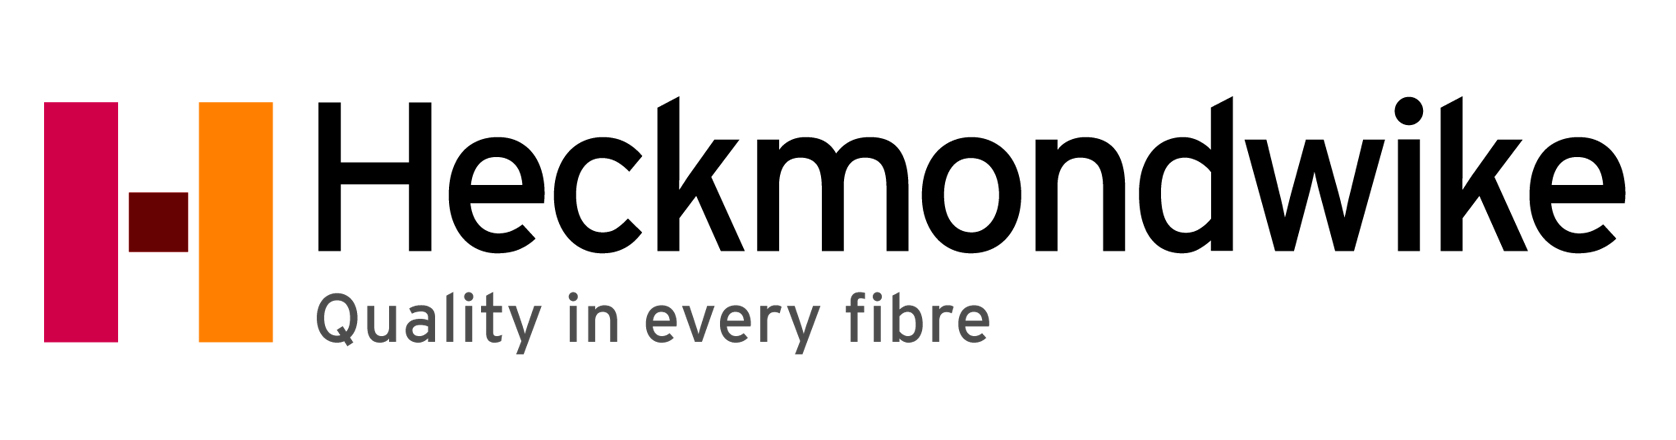 heckmondwike-logo.jpg